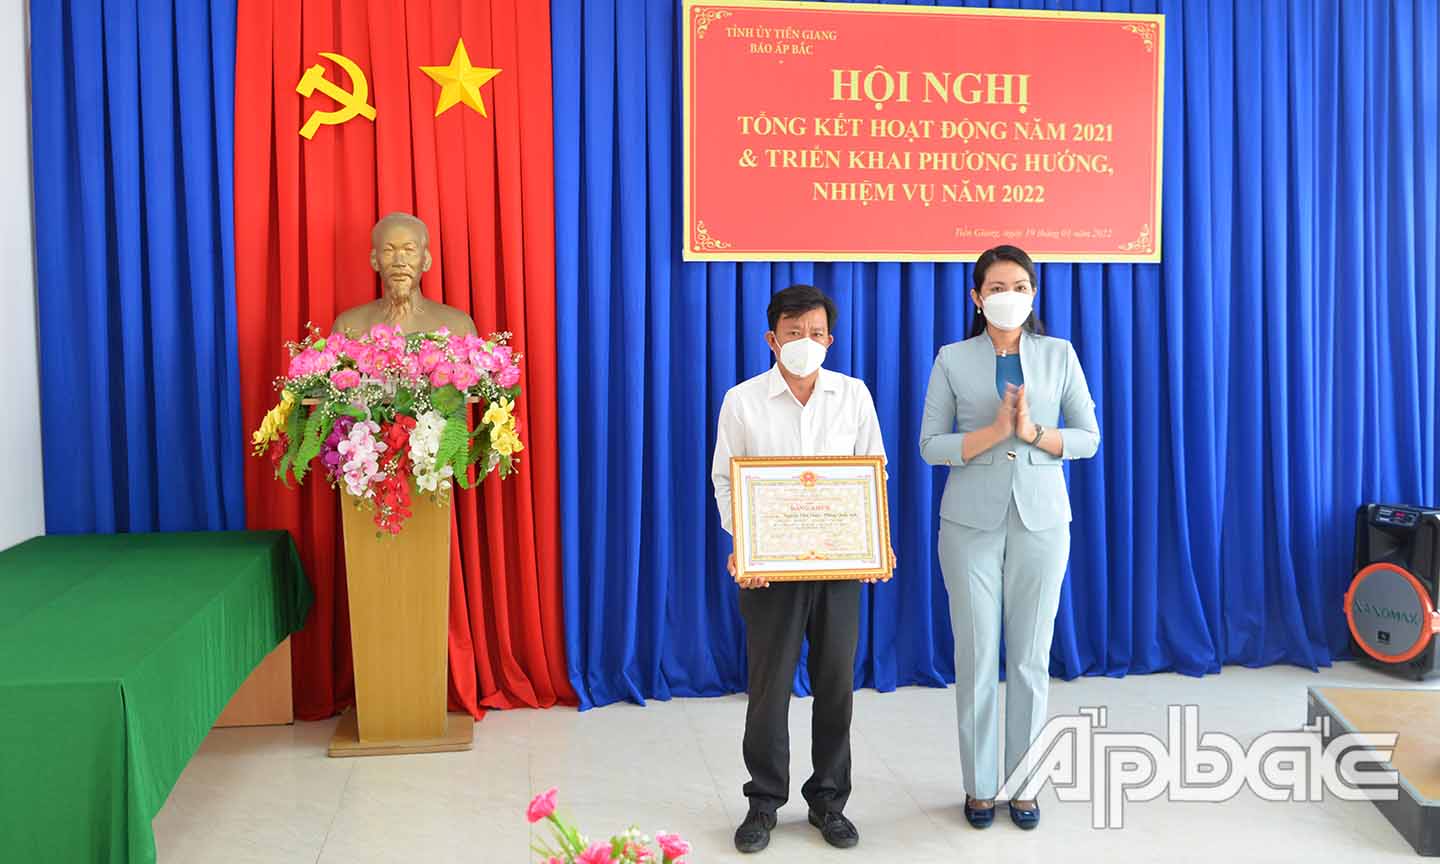 Đồng chí Nguyễn Thị Uyên Trang trao bằng khen của UBND tỉnh cho nhóm tác giả đạt giải Đặc biệt tại Giải Báo chí Tiền Giang - Nguyễn Văn Nguyễn.